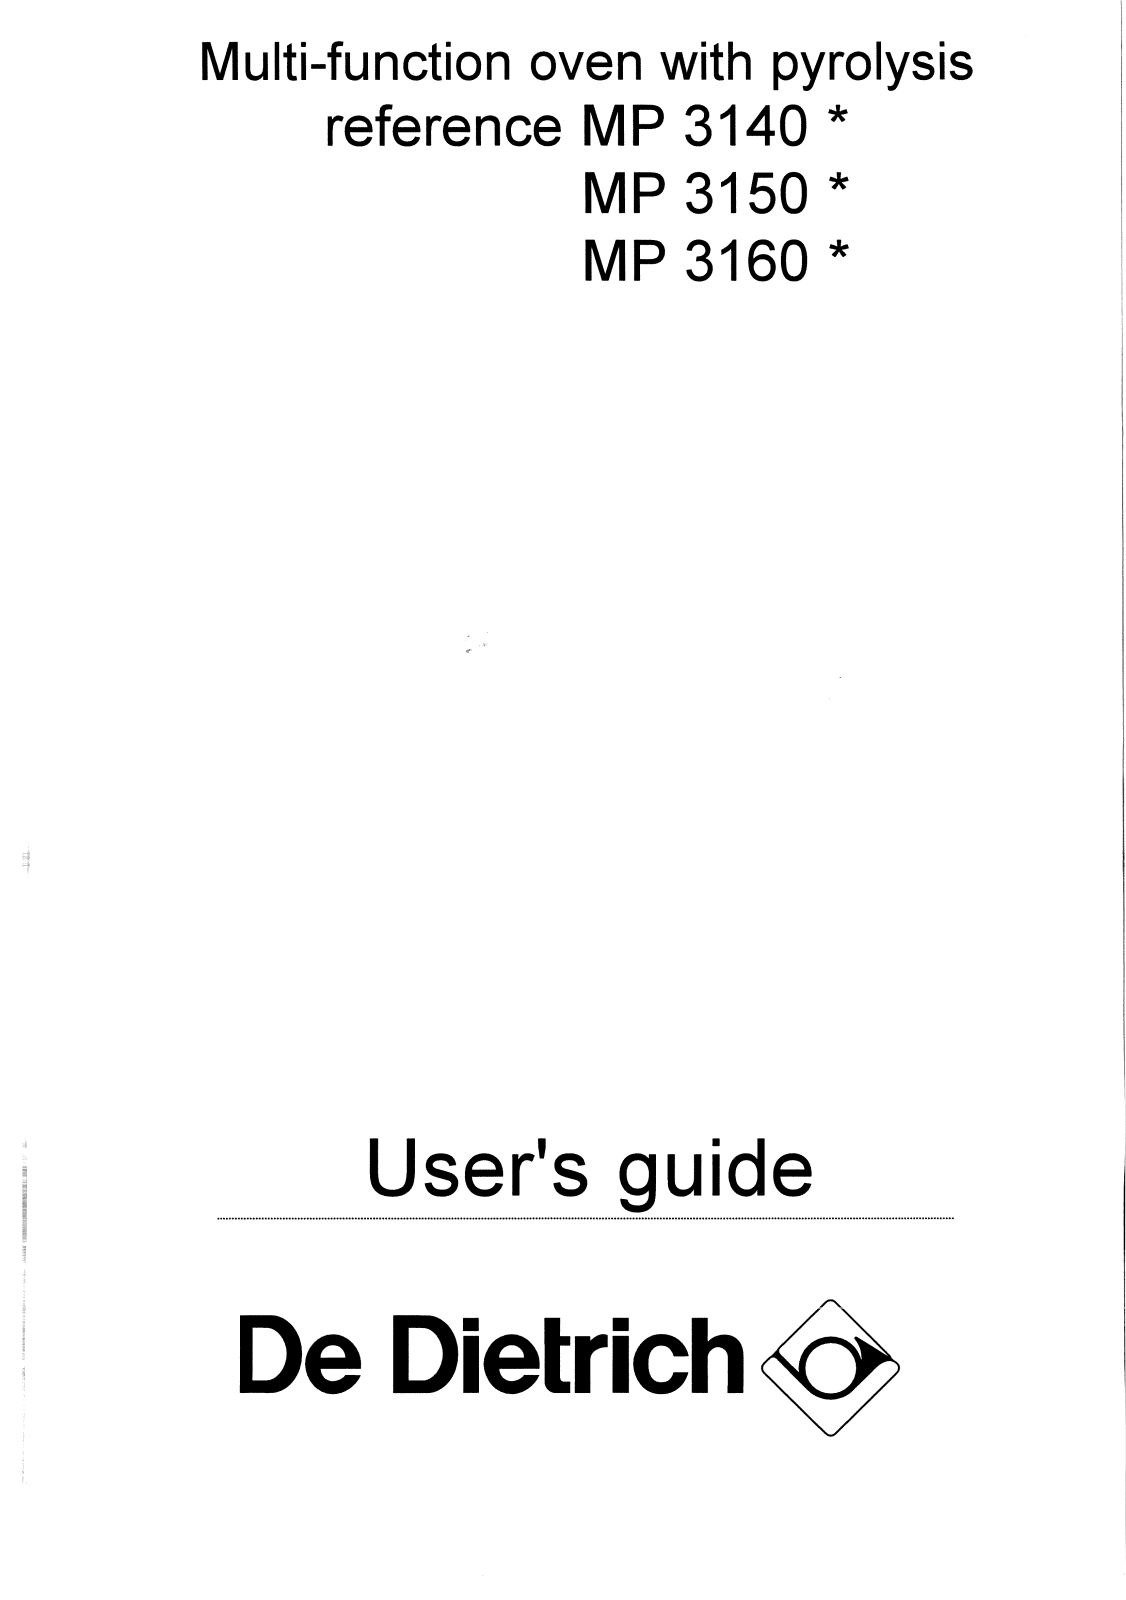 De dietrich MP3160N, MP3150N, MP3140N User Manual